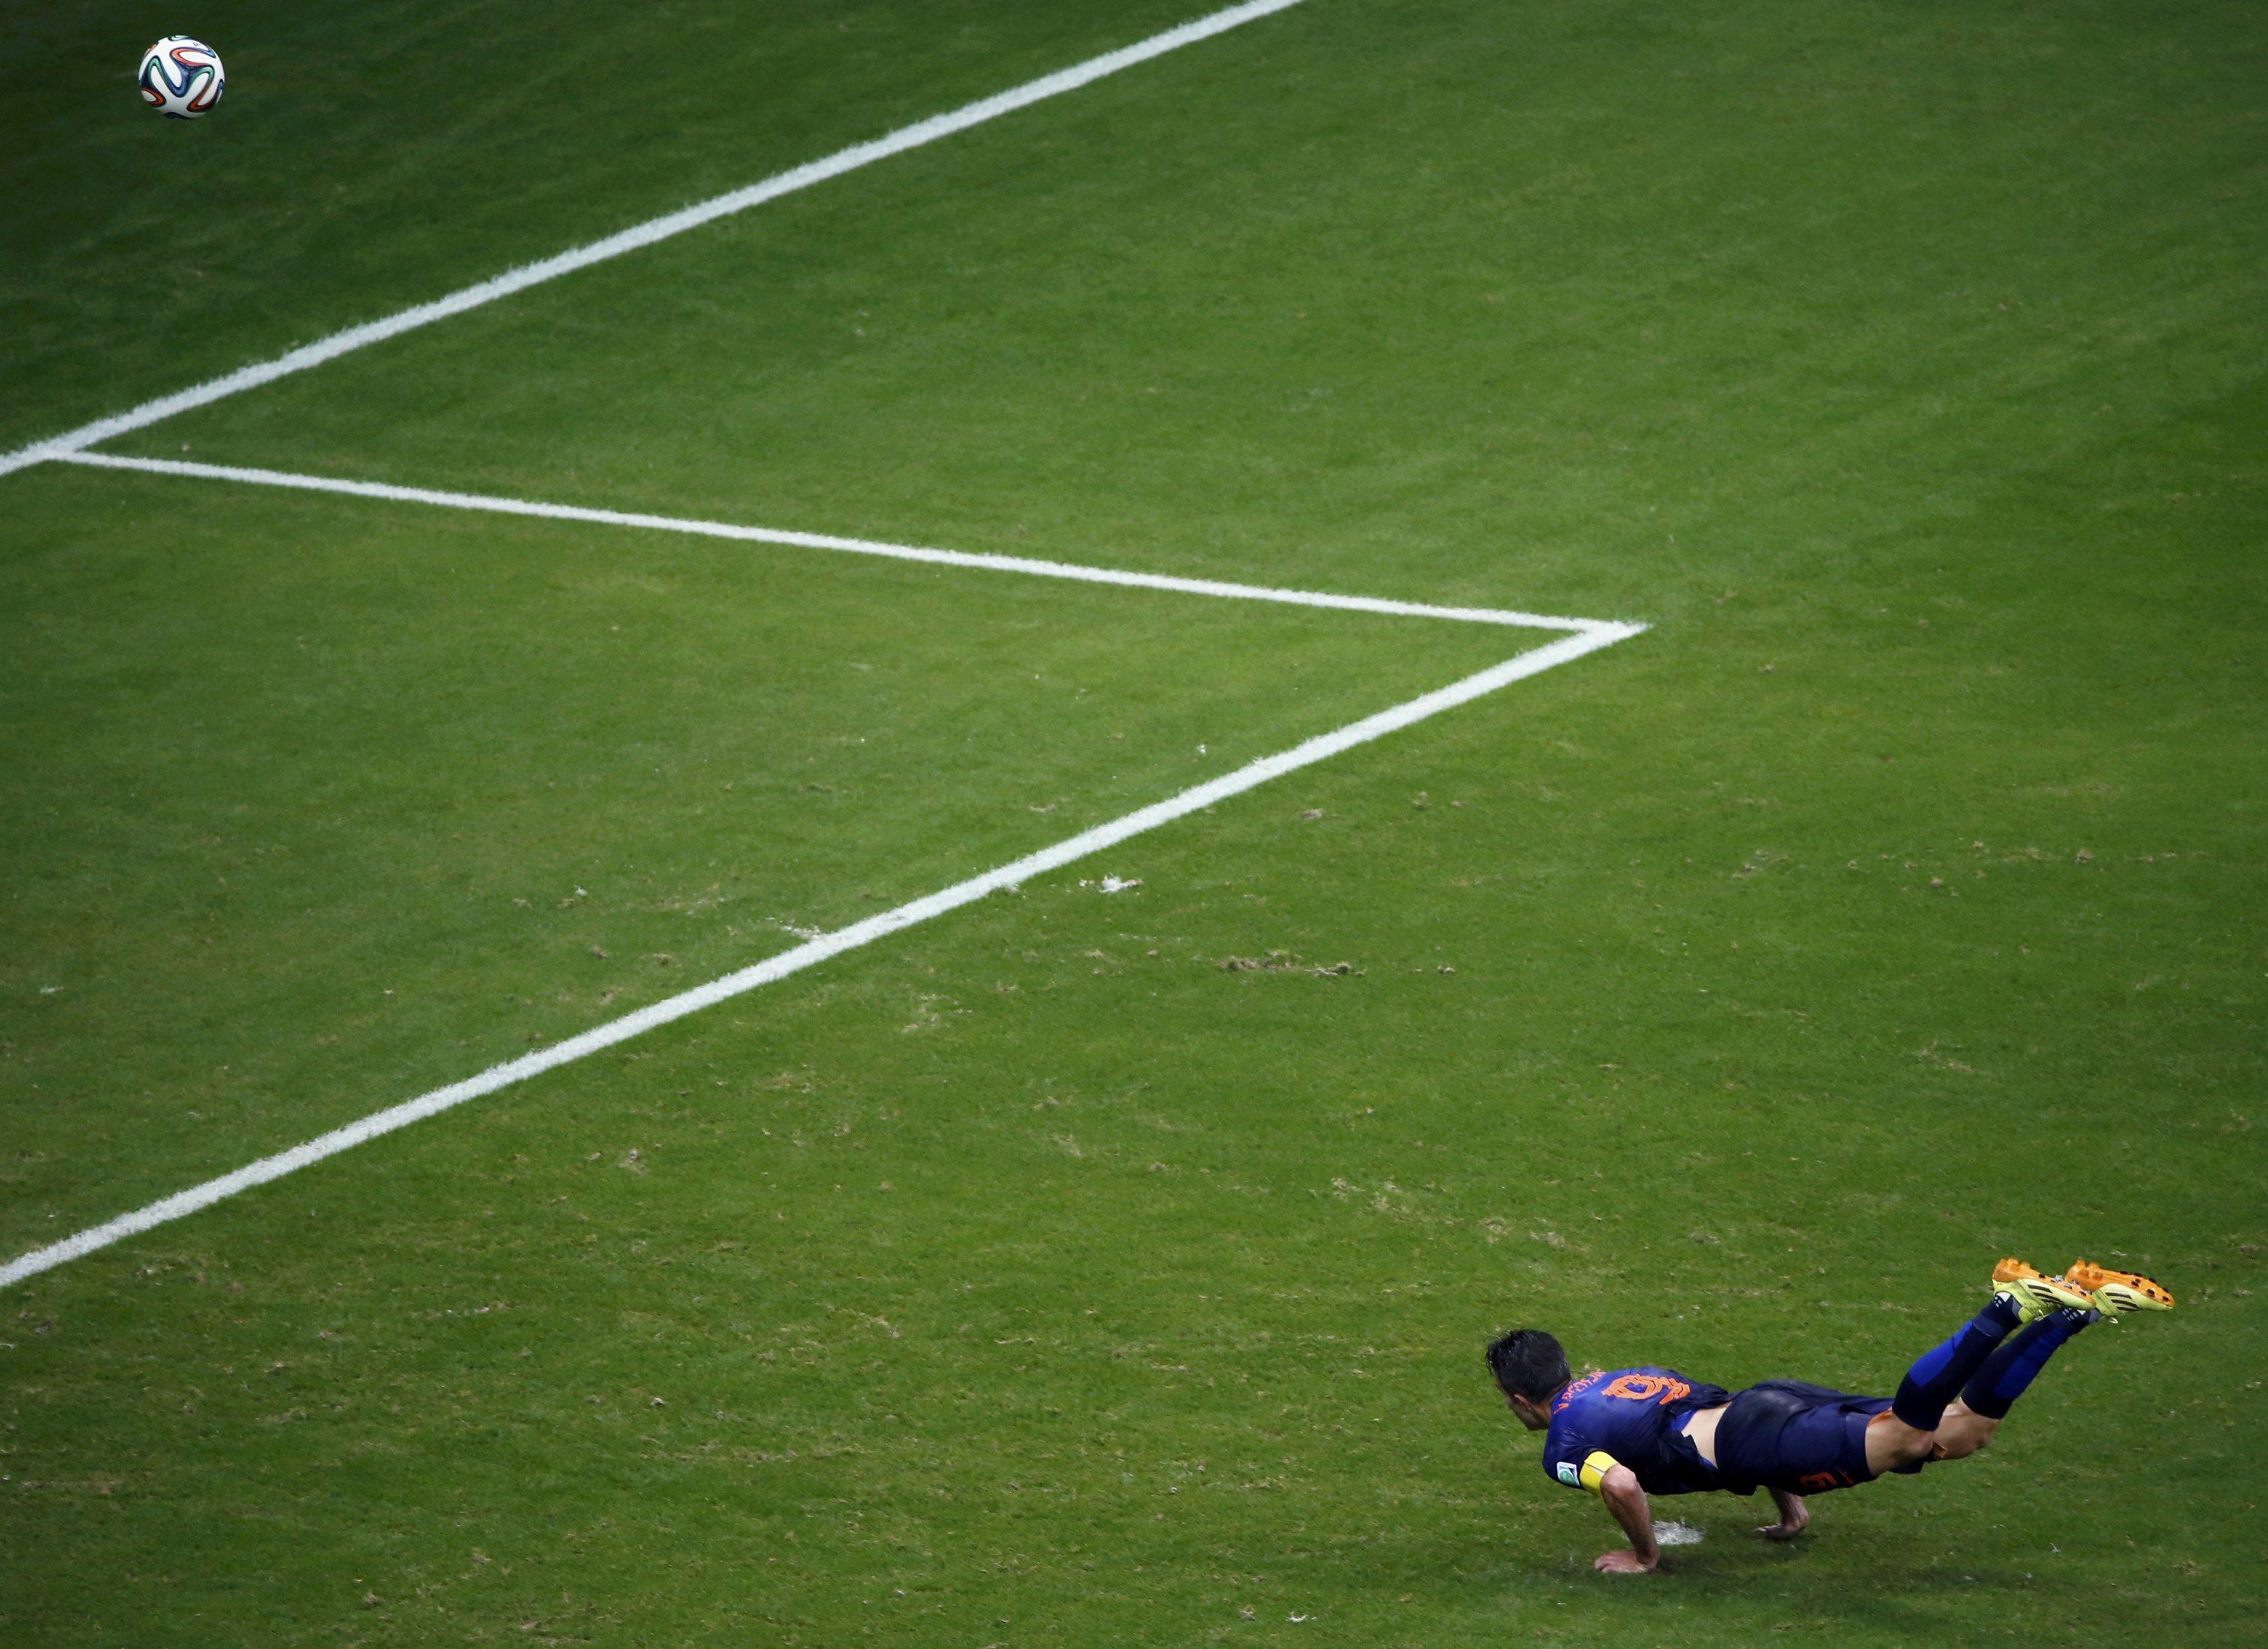 El primer gol de Van Persie contra España genera 183.000 tuits en un minuto